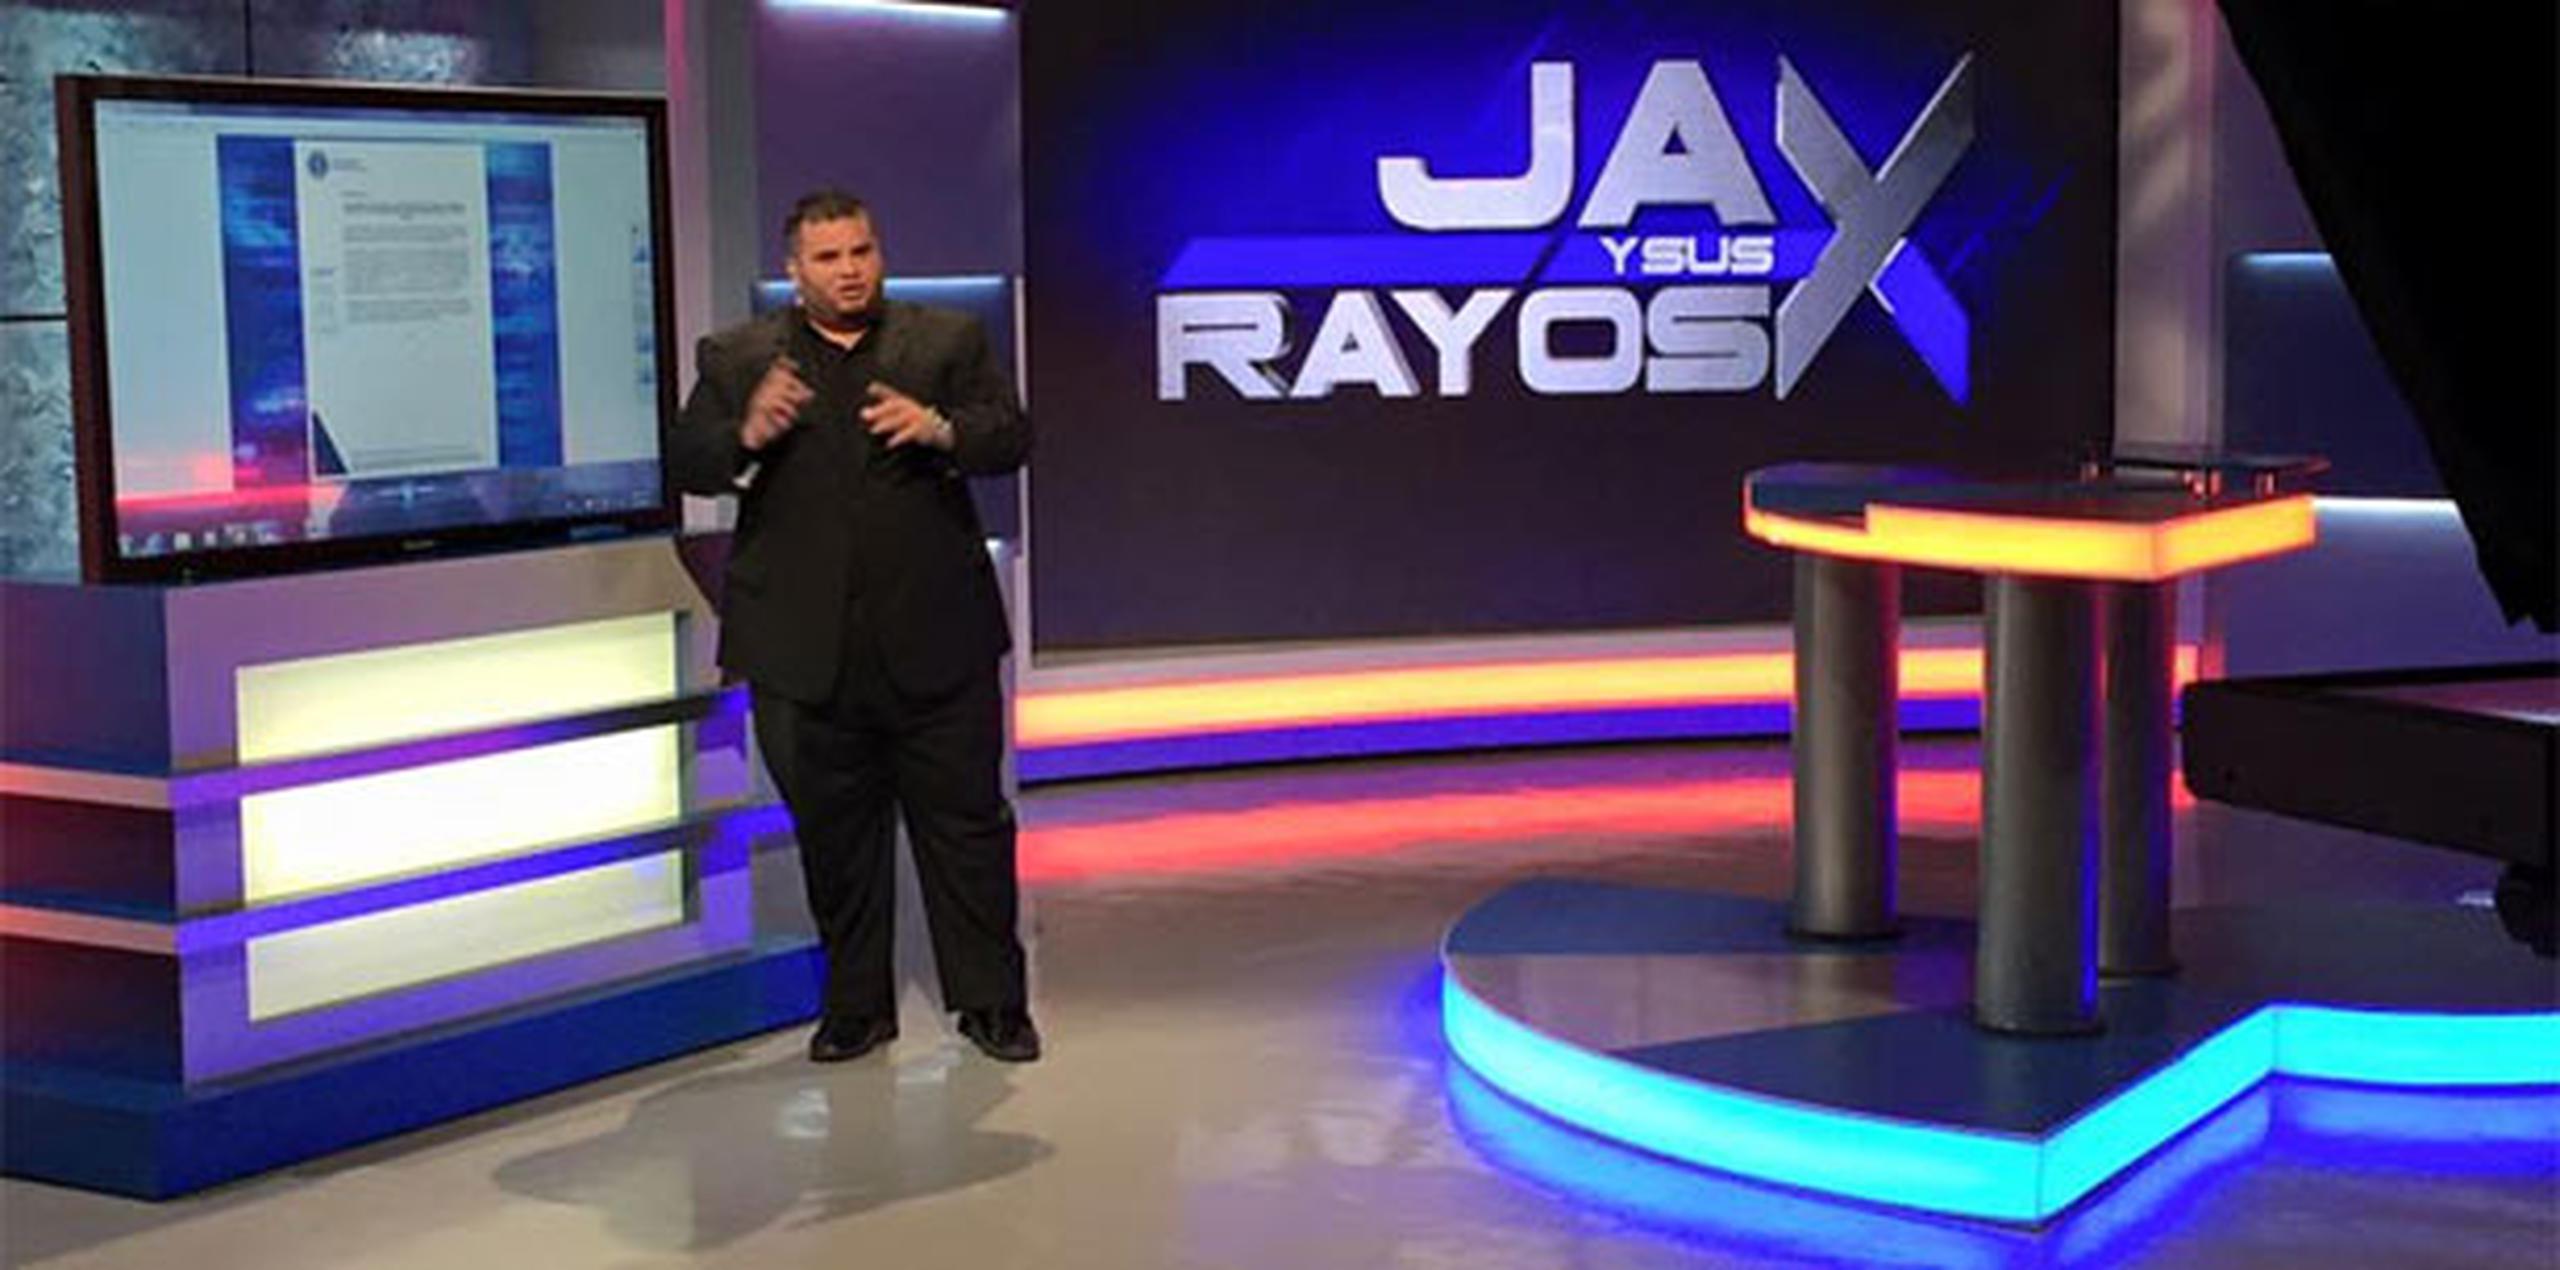 Jay Fonseca recordó que recientemente Jay y sus Rayos X publicó una entrevista con uno de esos testigos estrellas. (Archivo/Facebook/Jay y sus rayos X)